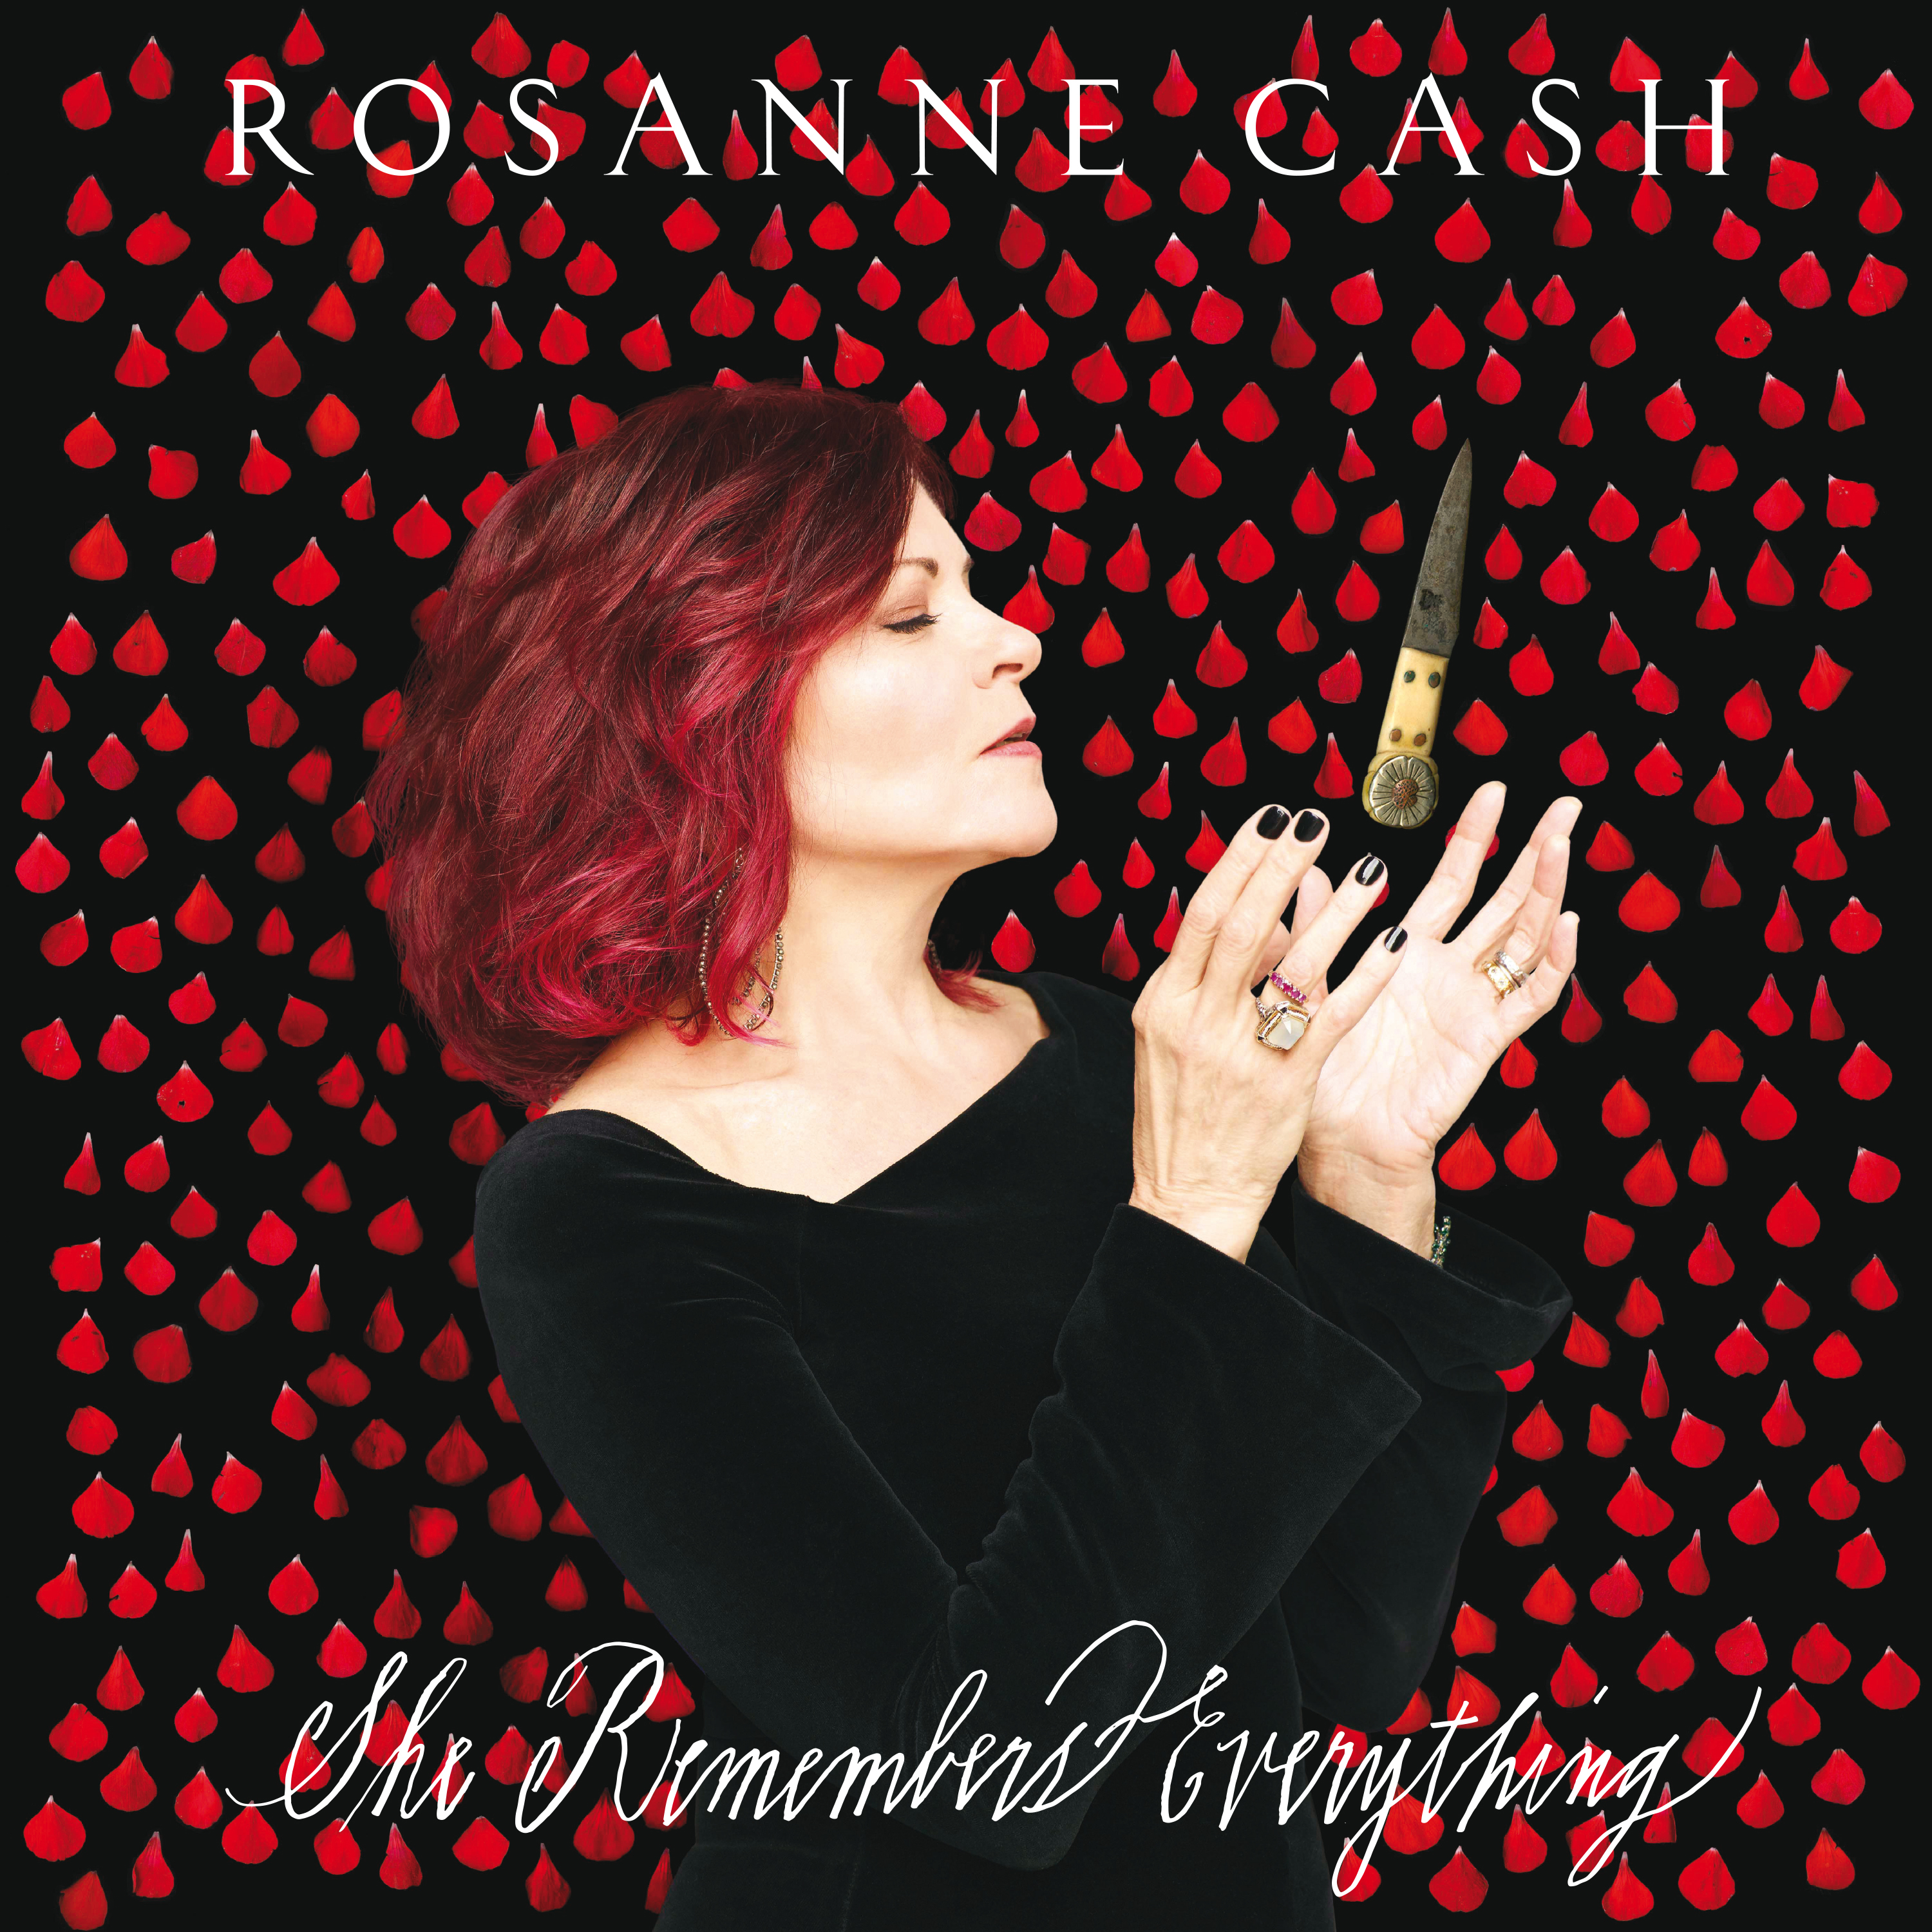 Rosanne Cash Wallpapers